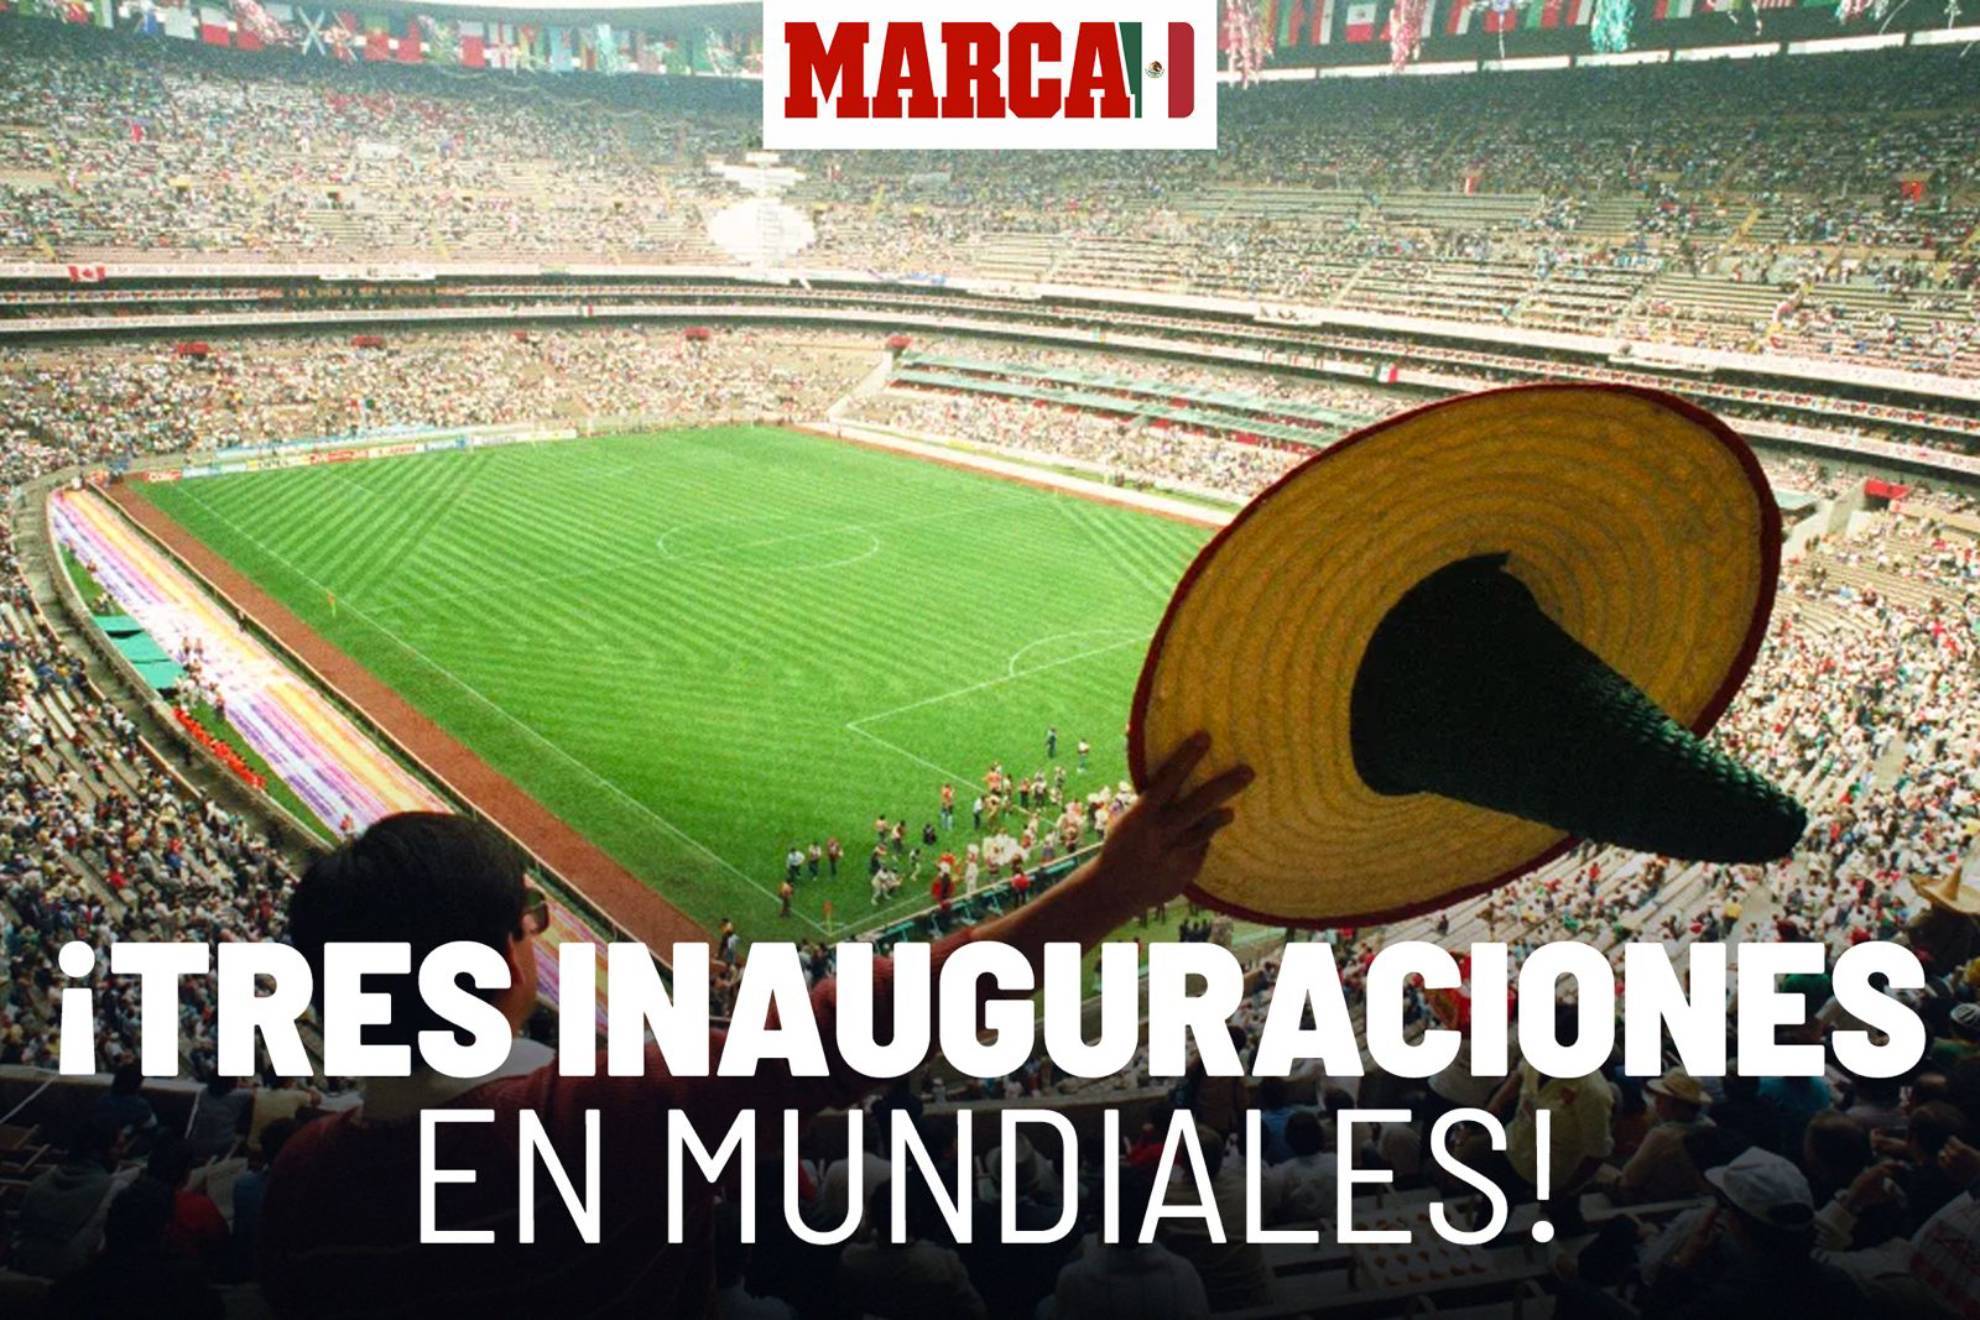 Estadio Azteca albergará tercera inauguraión de un Mundial en su historia